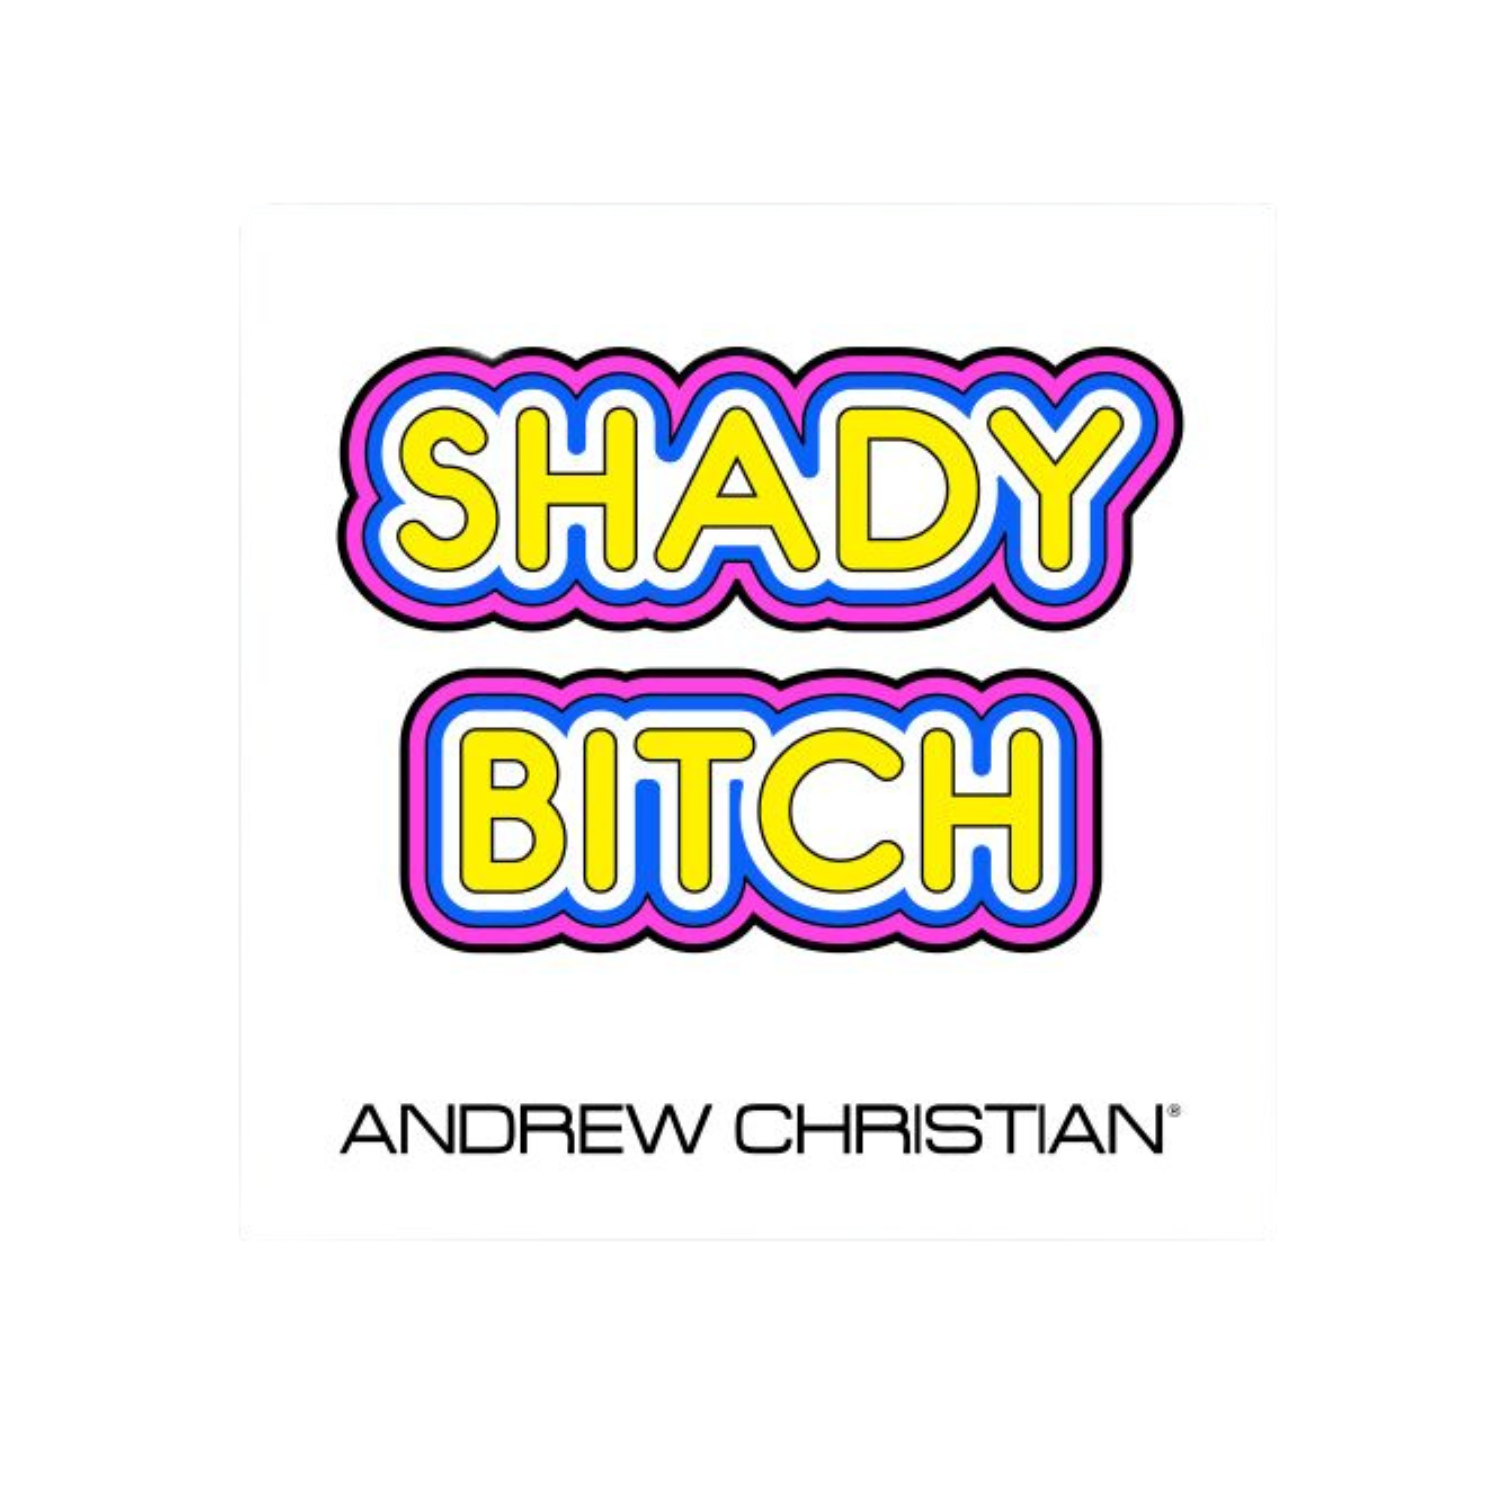 Leuke stickers met gay thema of LGBTQ+ thema, zoals deze leuke stickers ontworpen door Andrew Christian koop je bij Flavourez! Deze "Shady Bitch" sticker is erg uniek! Door deze producten te kopen steun je kleine en grote LGBTQ+ of Gay ondernemingen. Ben trots op wie je bent!